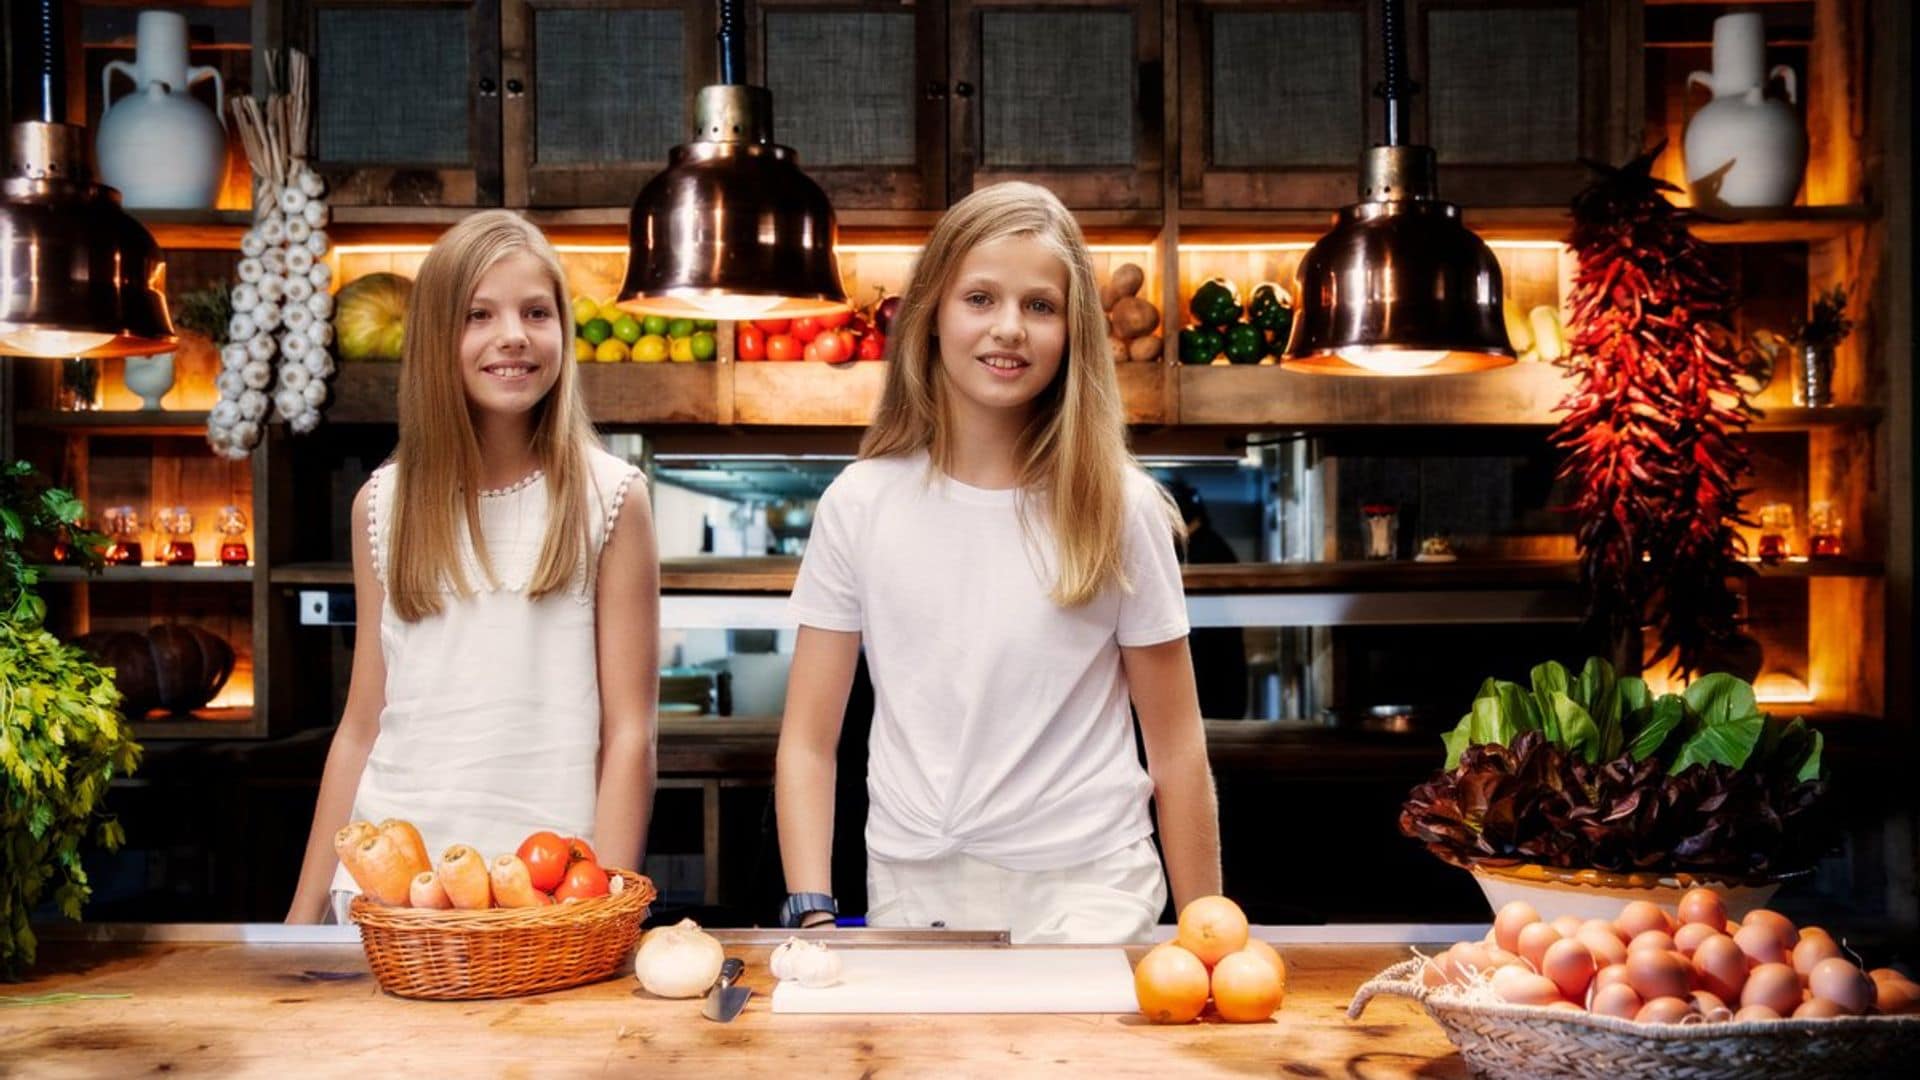 Descubrimos la pasión secreta de Leonor y Sofía, dos hermanas mano a mano en la cocina de La Zarzuela